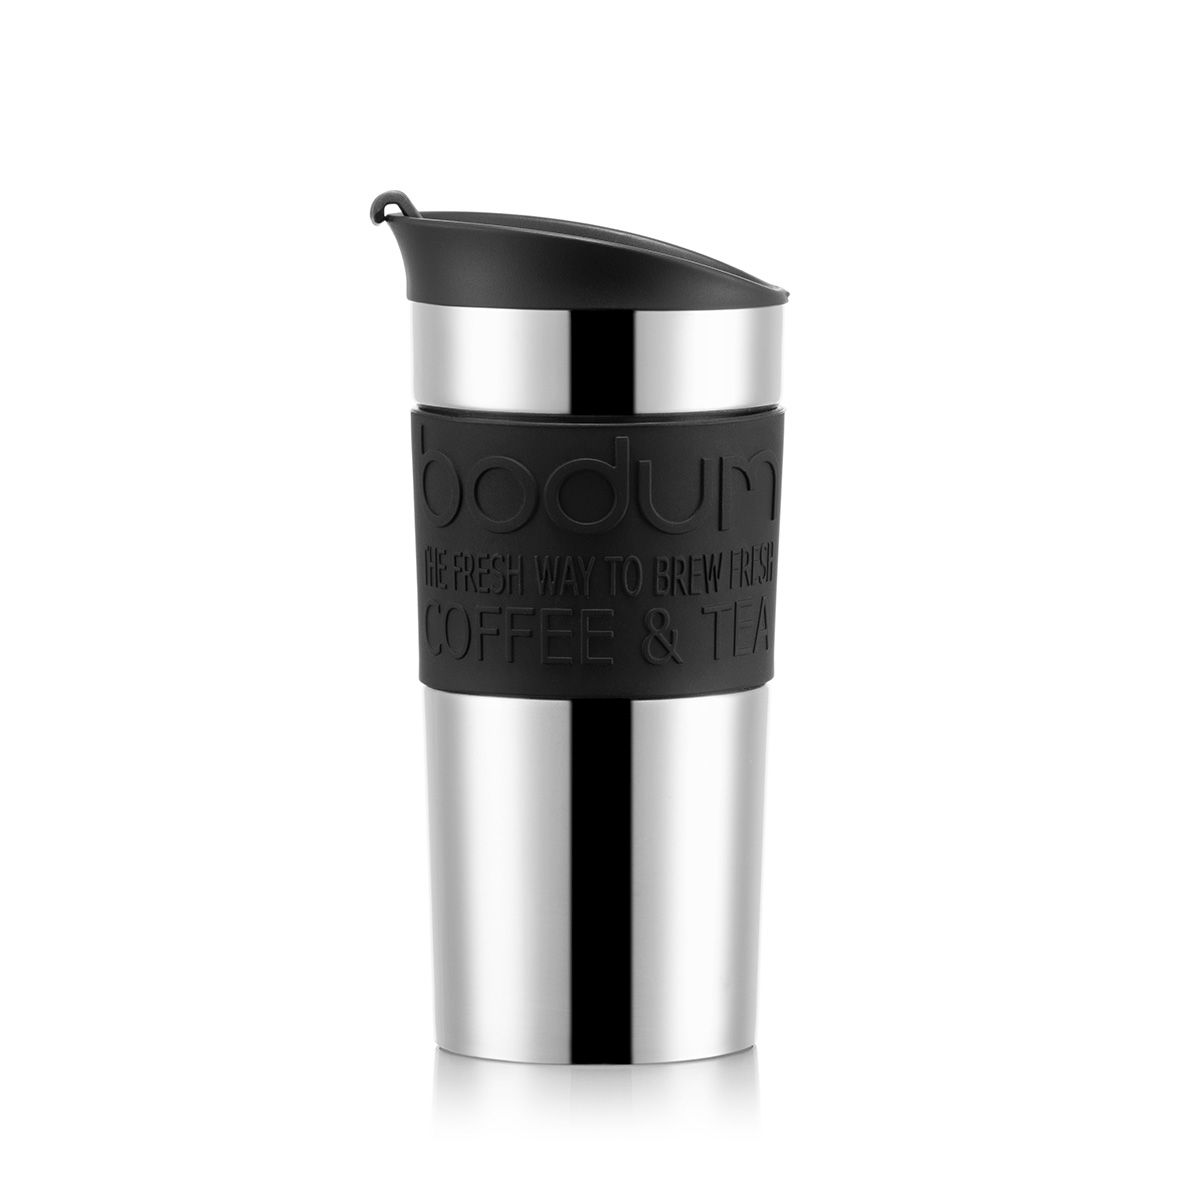 Bodum Rejsepress sæt kaffemaskine dobbeltvægget, sort